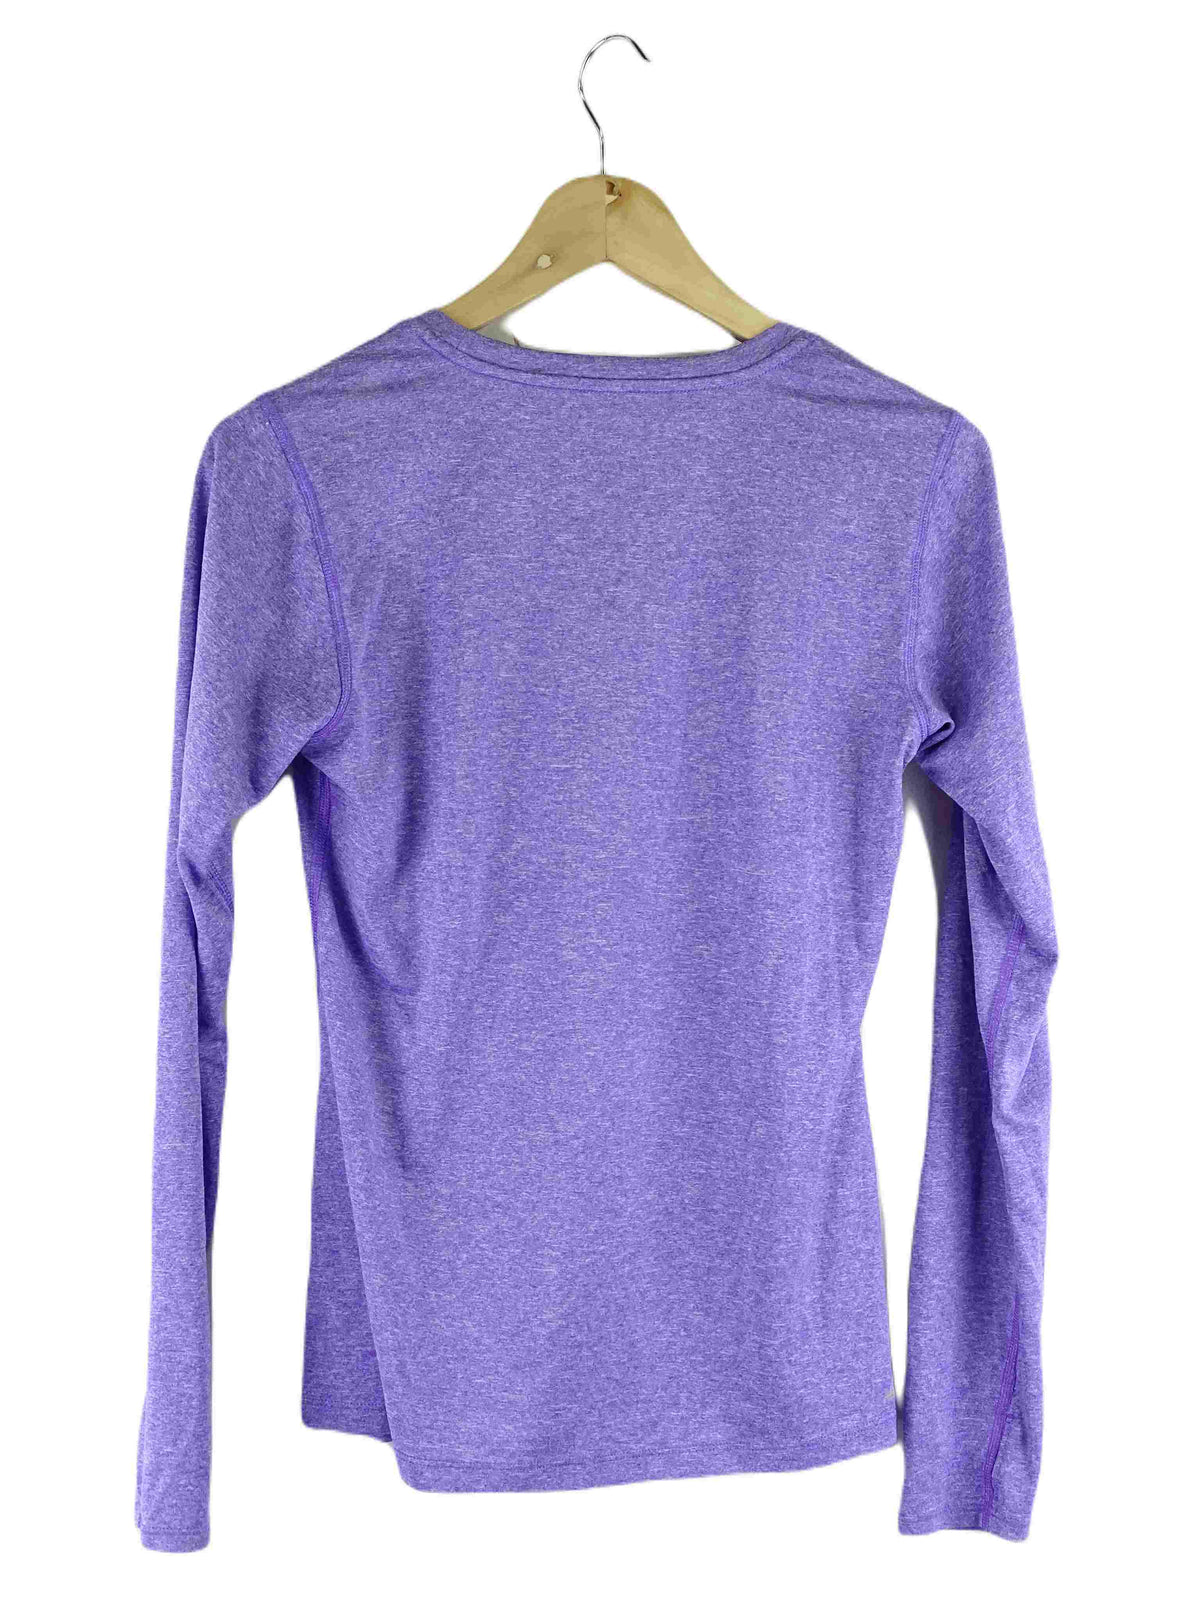 New Balance Purple Long Sleeve Top S